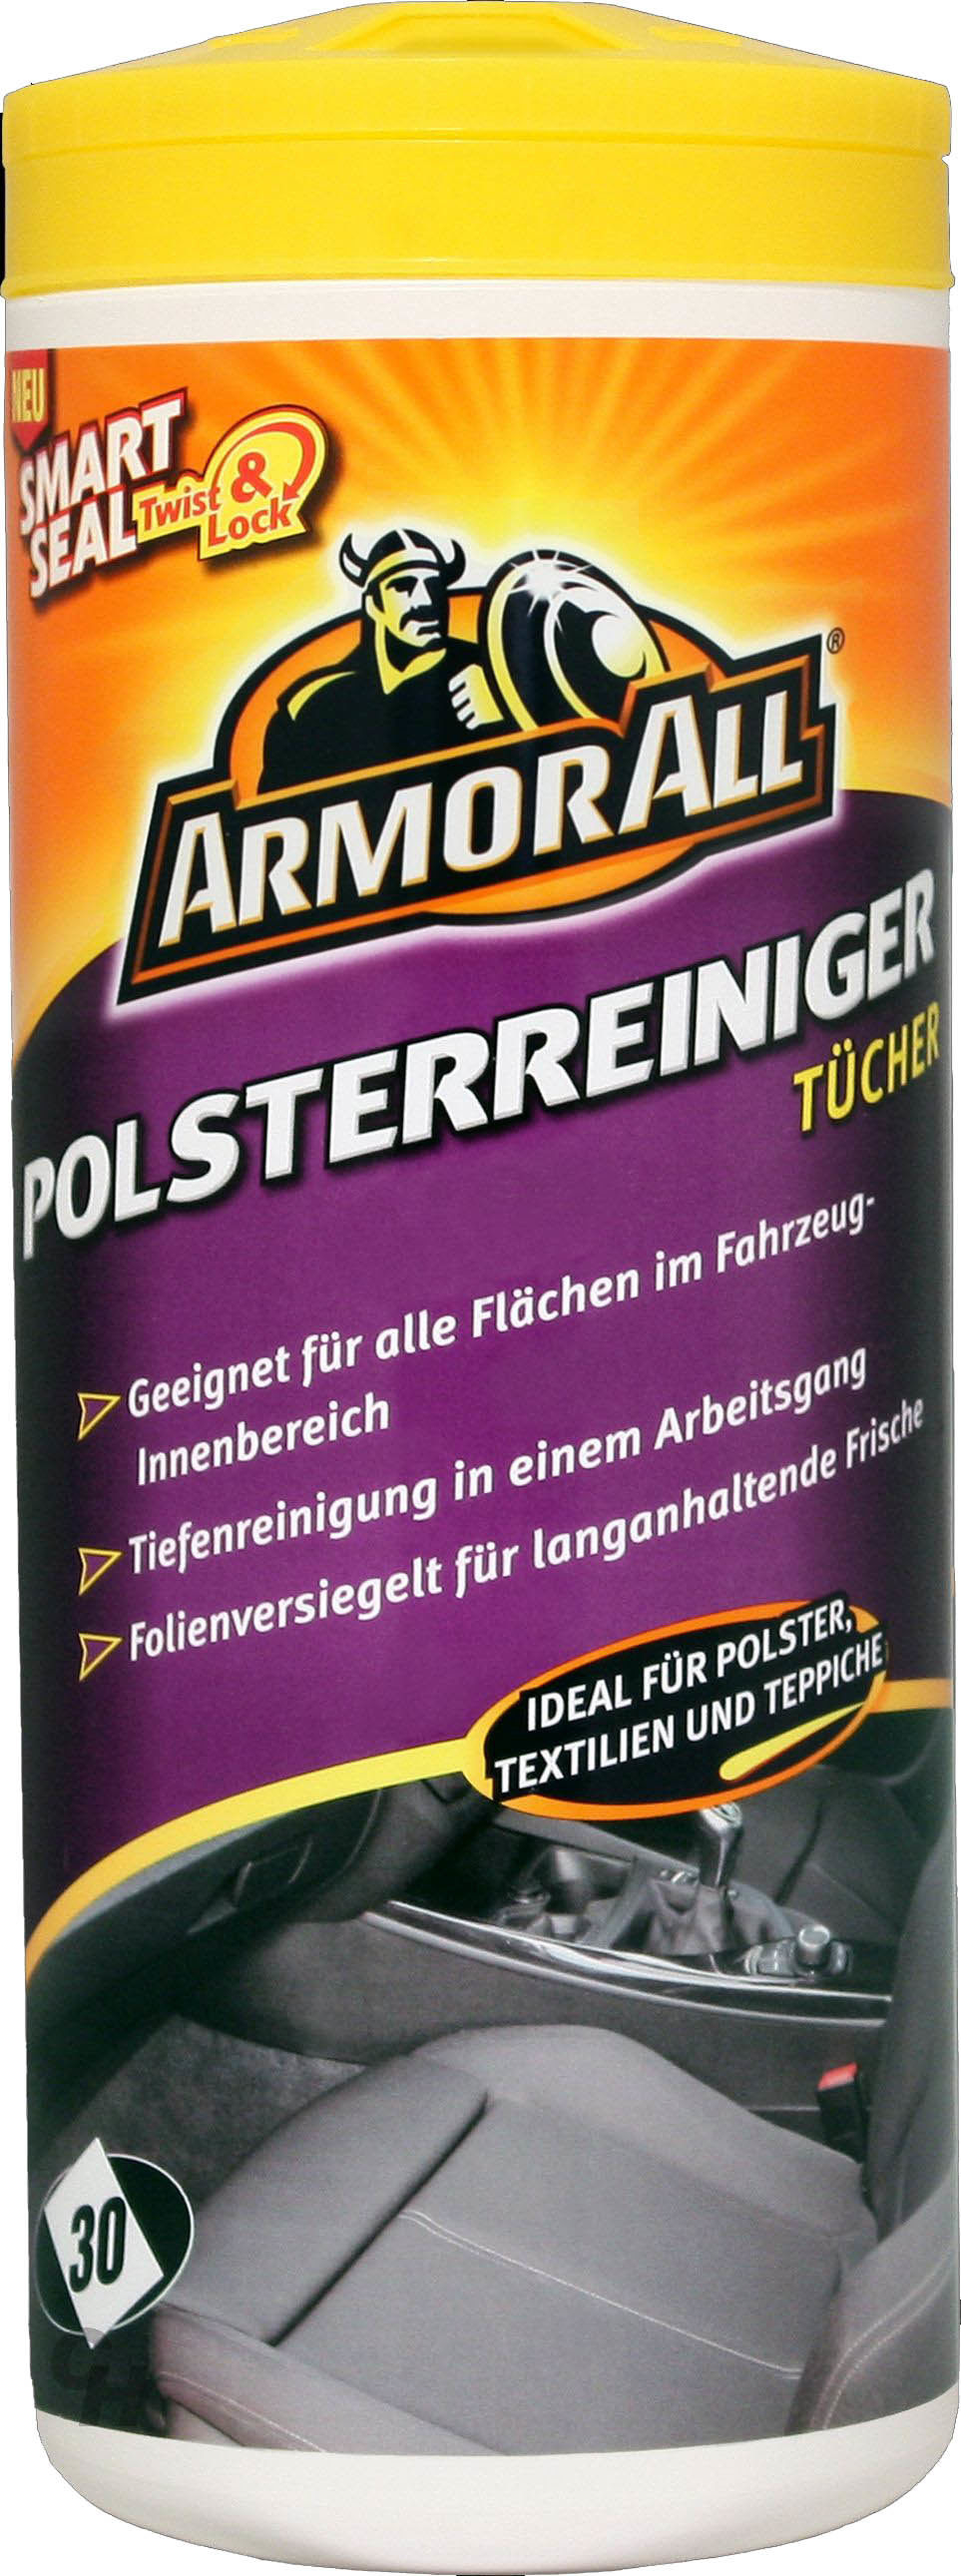 Preview: ARMOR ALL Polsterreiniger Tücher Tiefen Reiniger Polster Textil Teppich 30 Stk